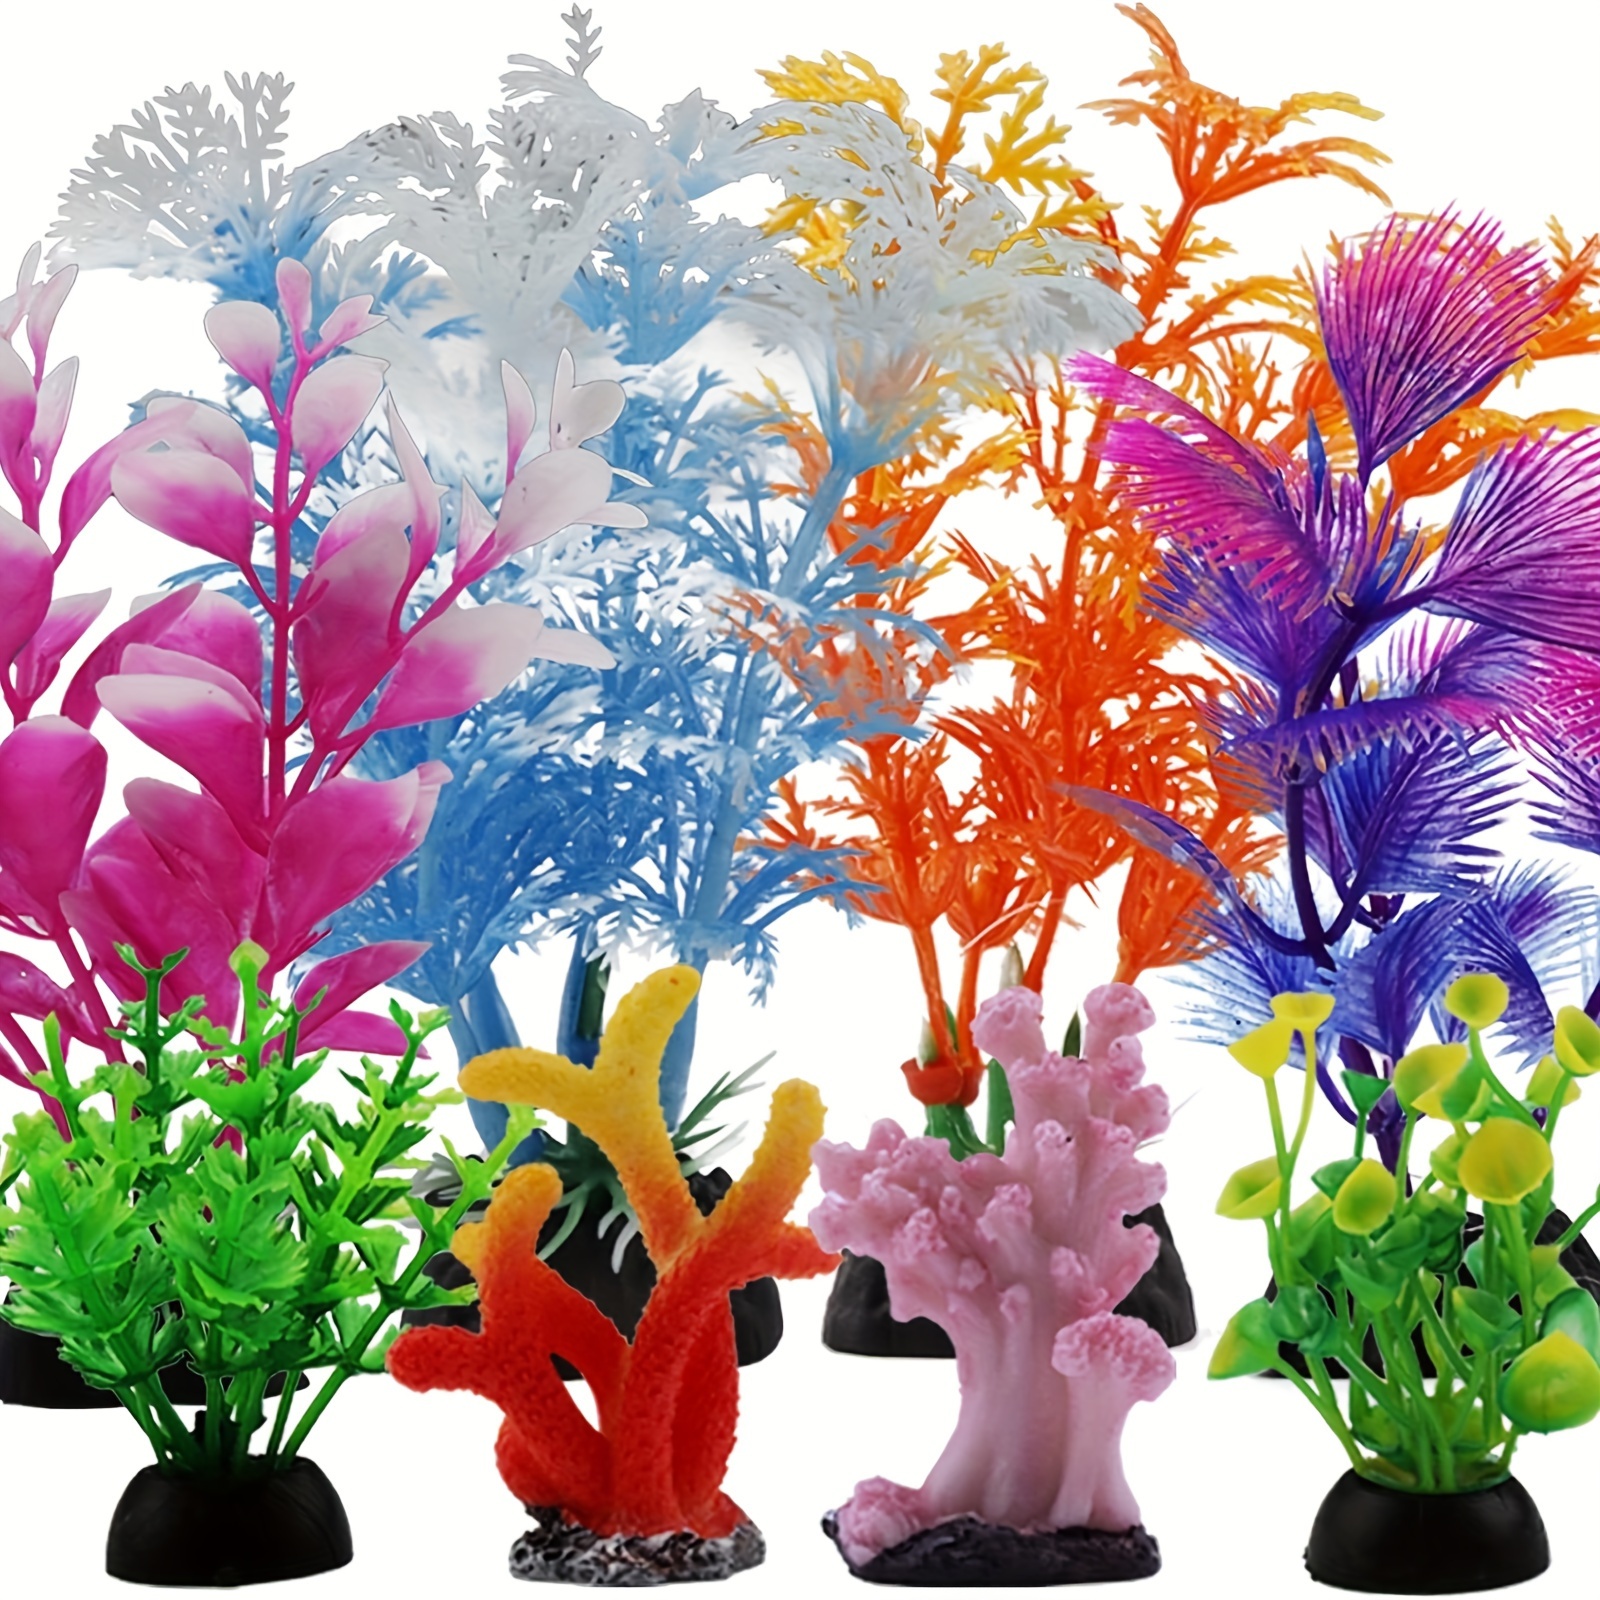 Unique Bargains 1 Pcs Colorful Faux Coral Reef Decor for Aquarium